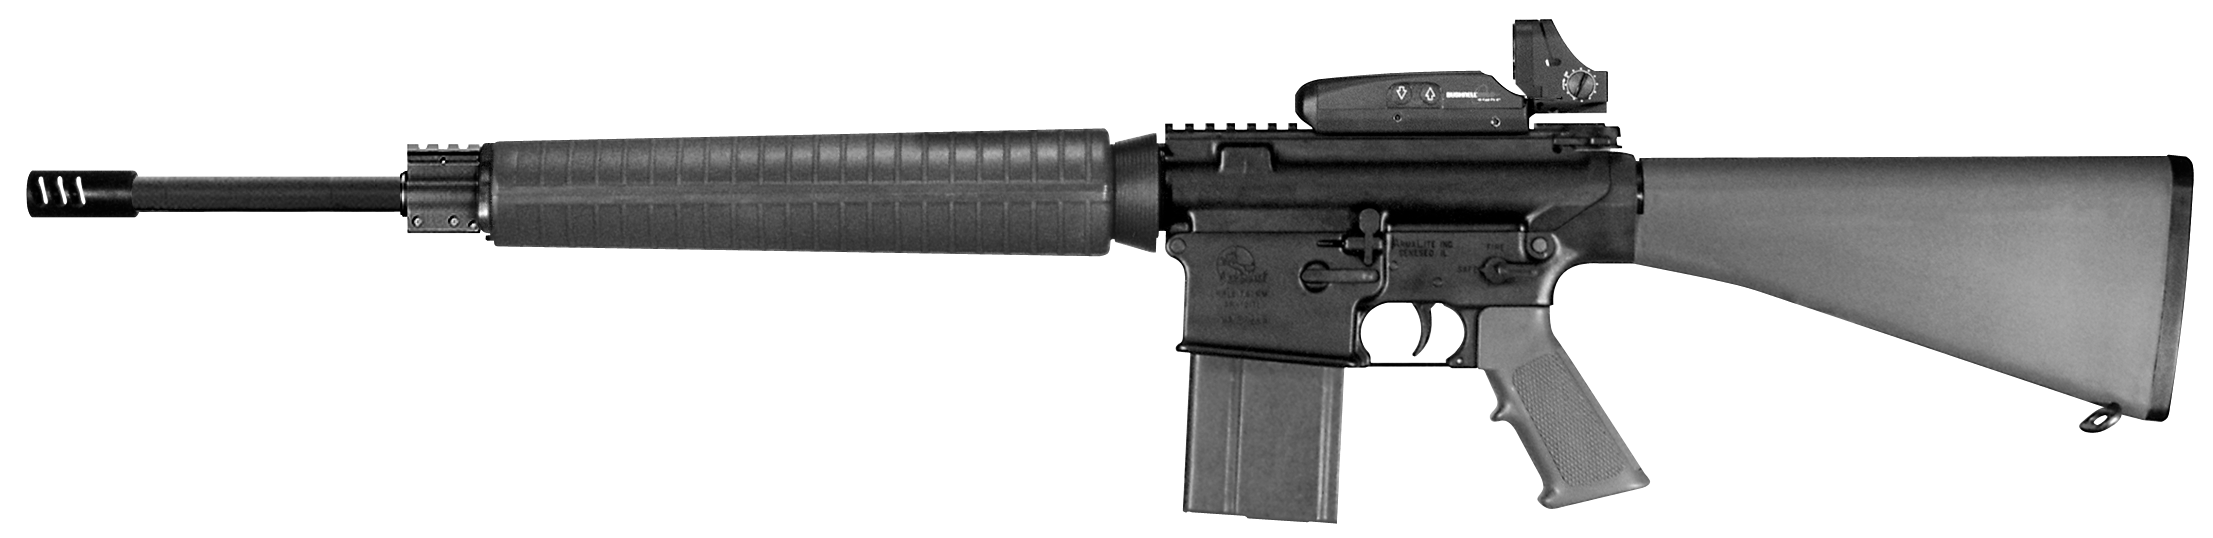 AR-10A4 Rifle